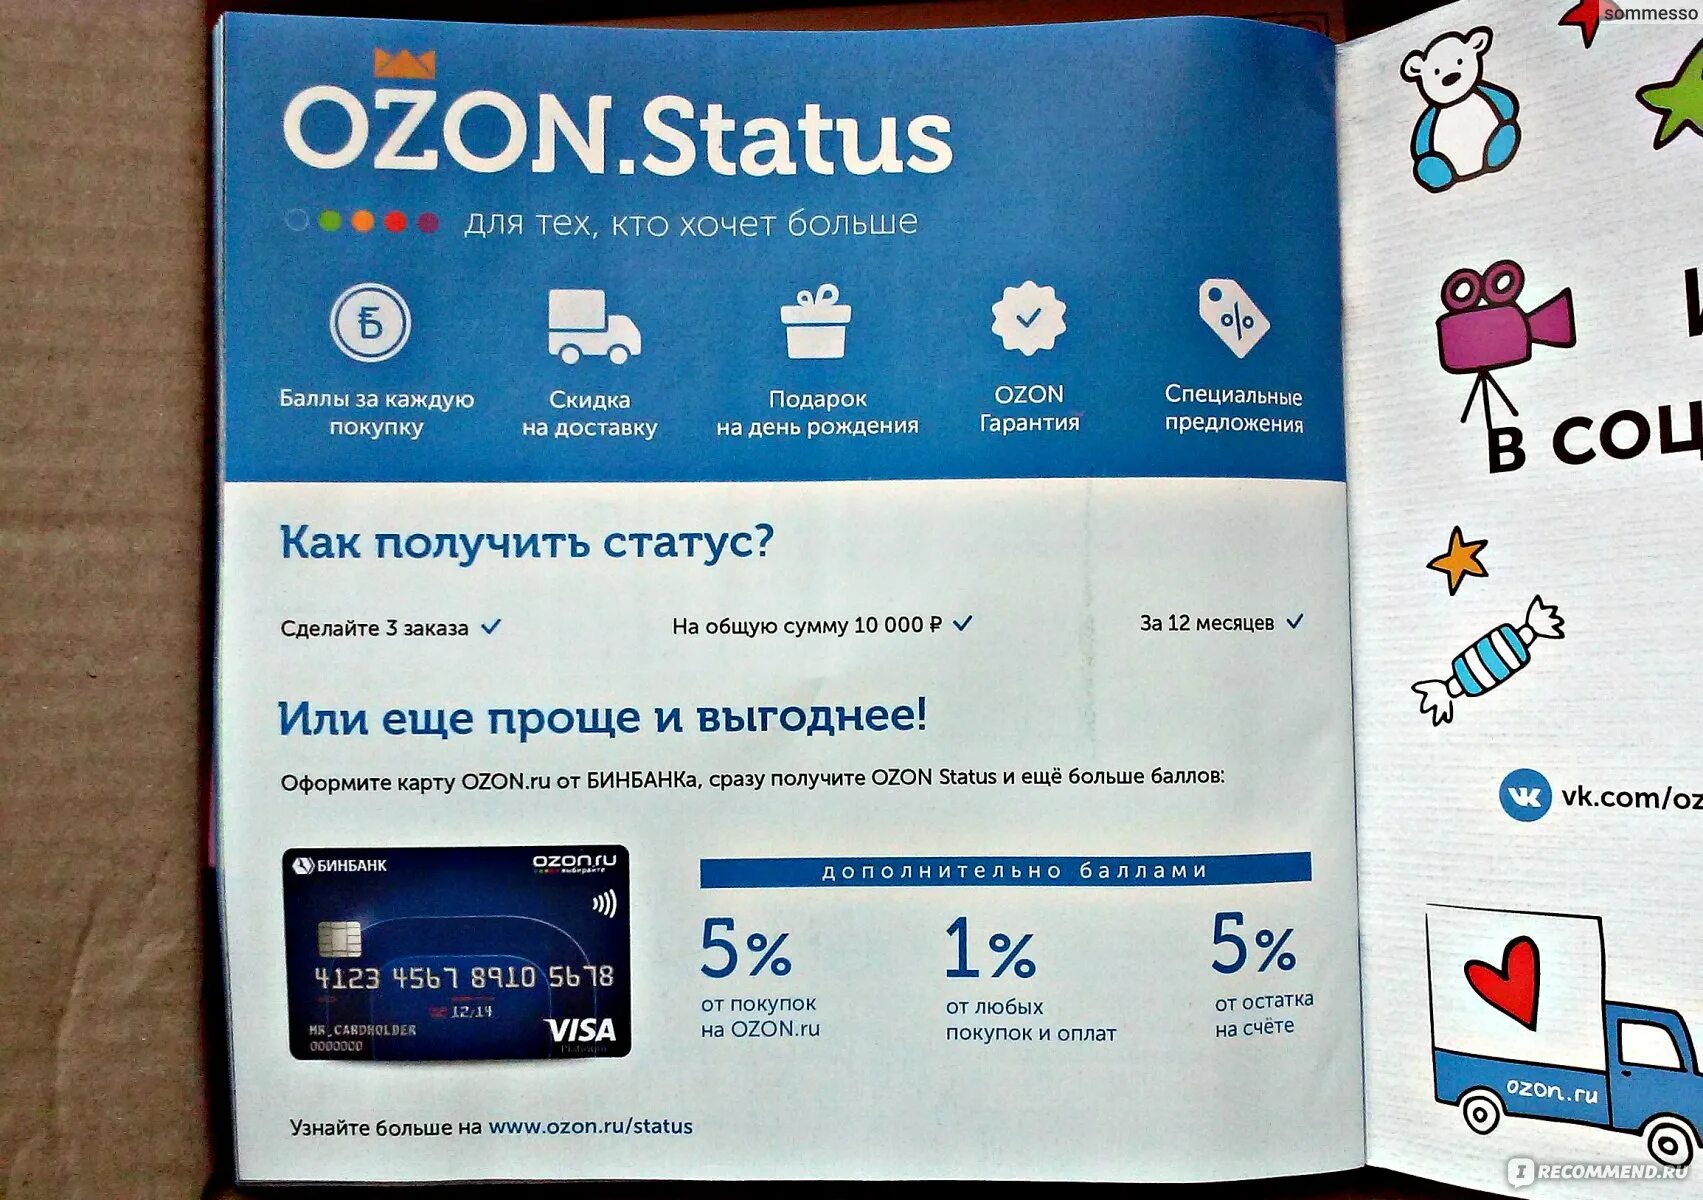 Озон карта. Подарочная карта OZON. Озон или. Магазины Озон на карте. Можно расплачиваться озон картой в обычных магазинах